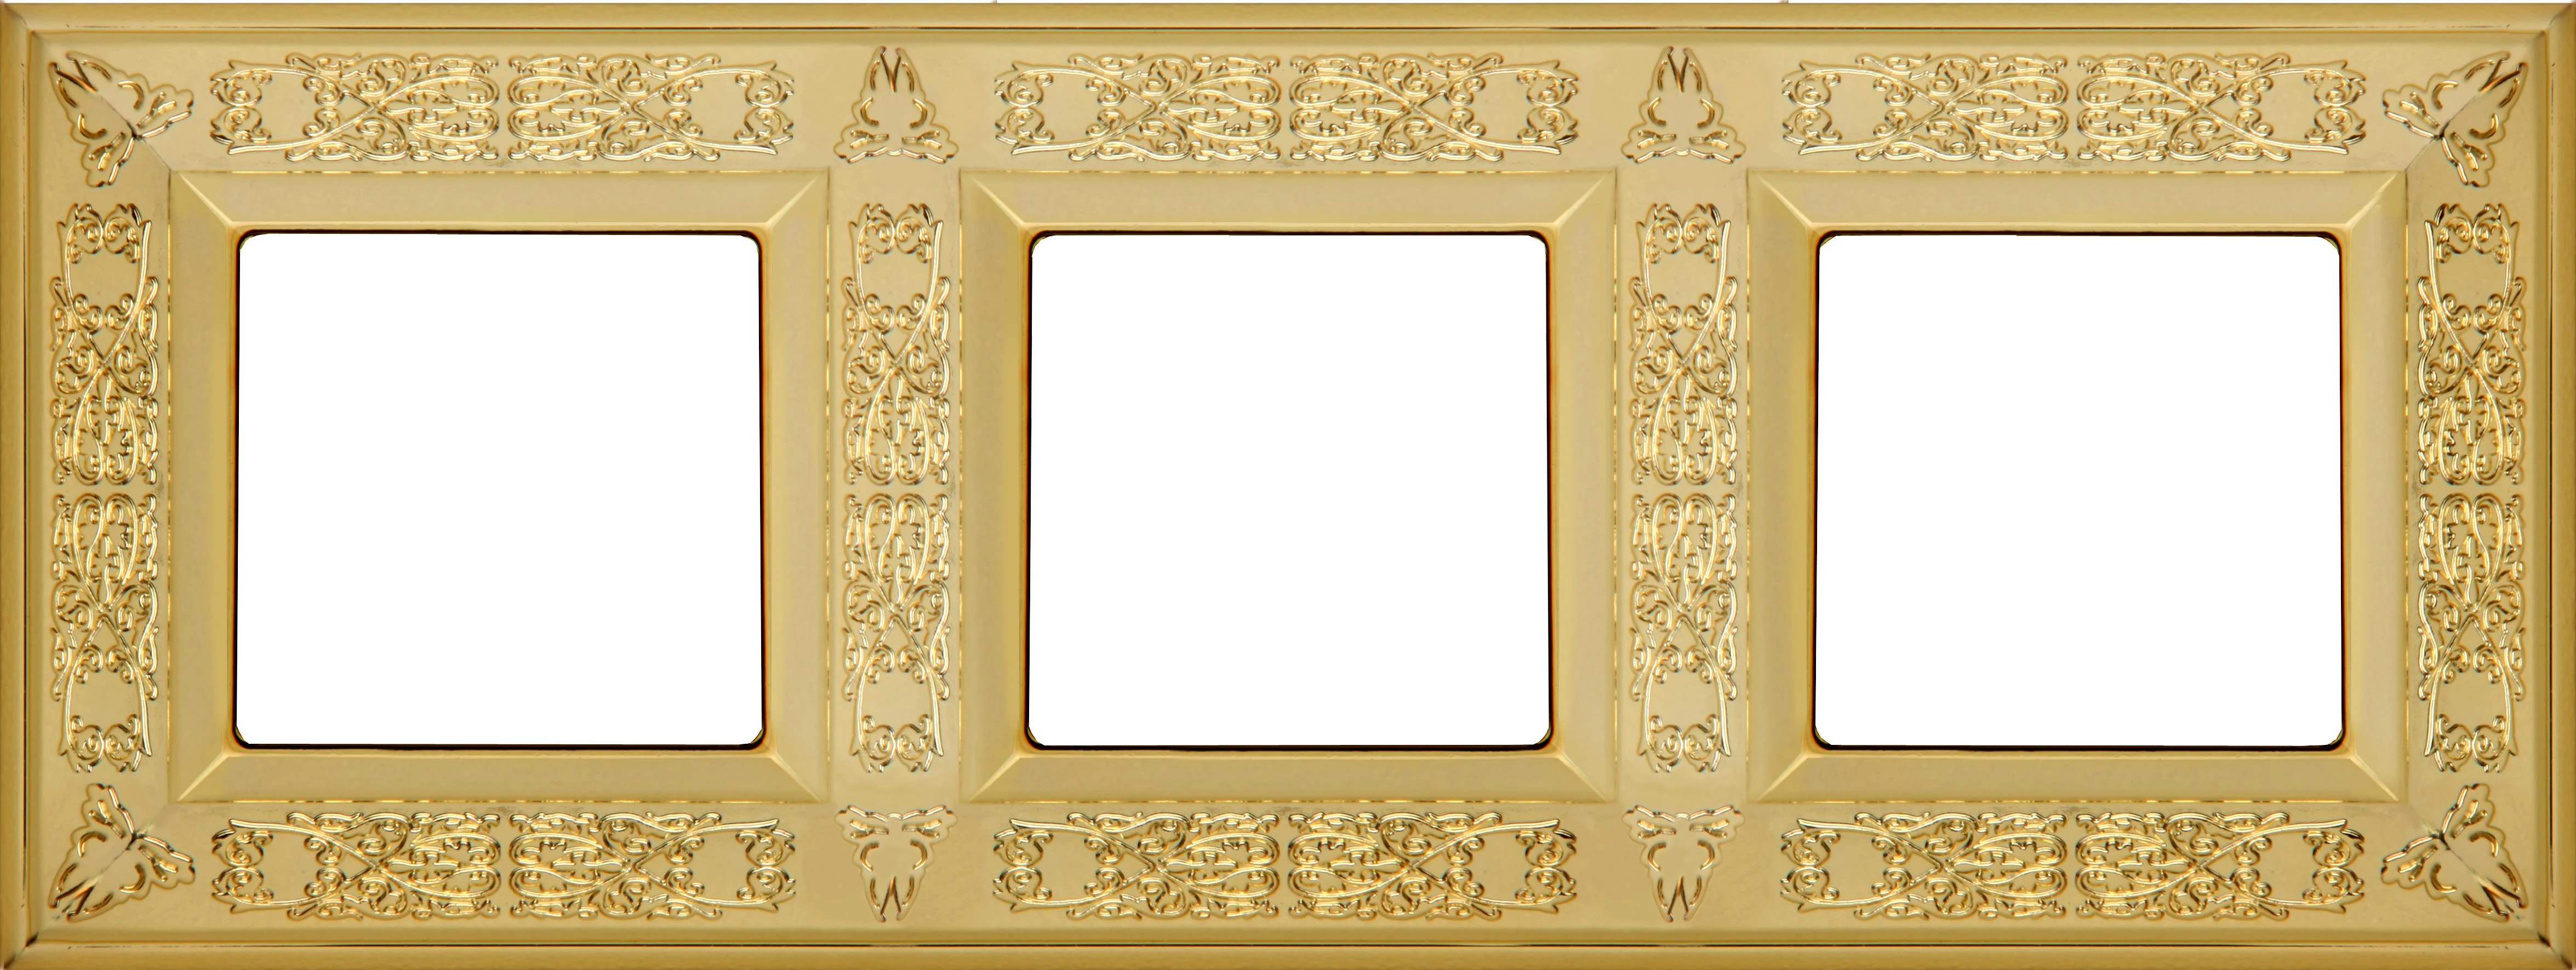  артикул FD01413OB название Рамка 3-ая (тройная), цвет Светлое золото, Granada, Fede